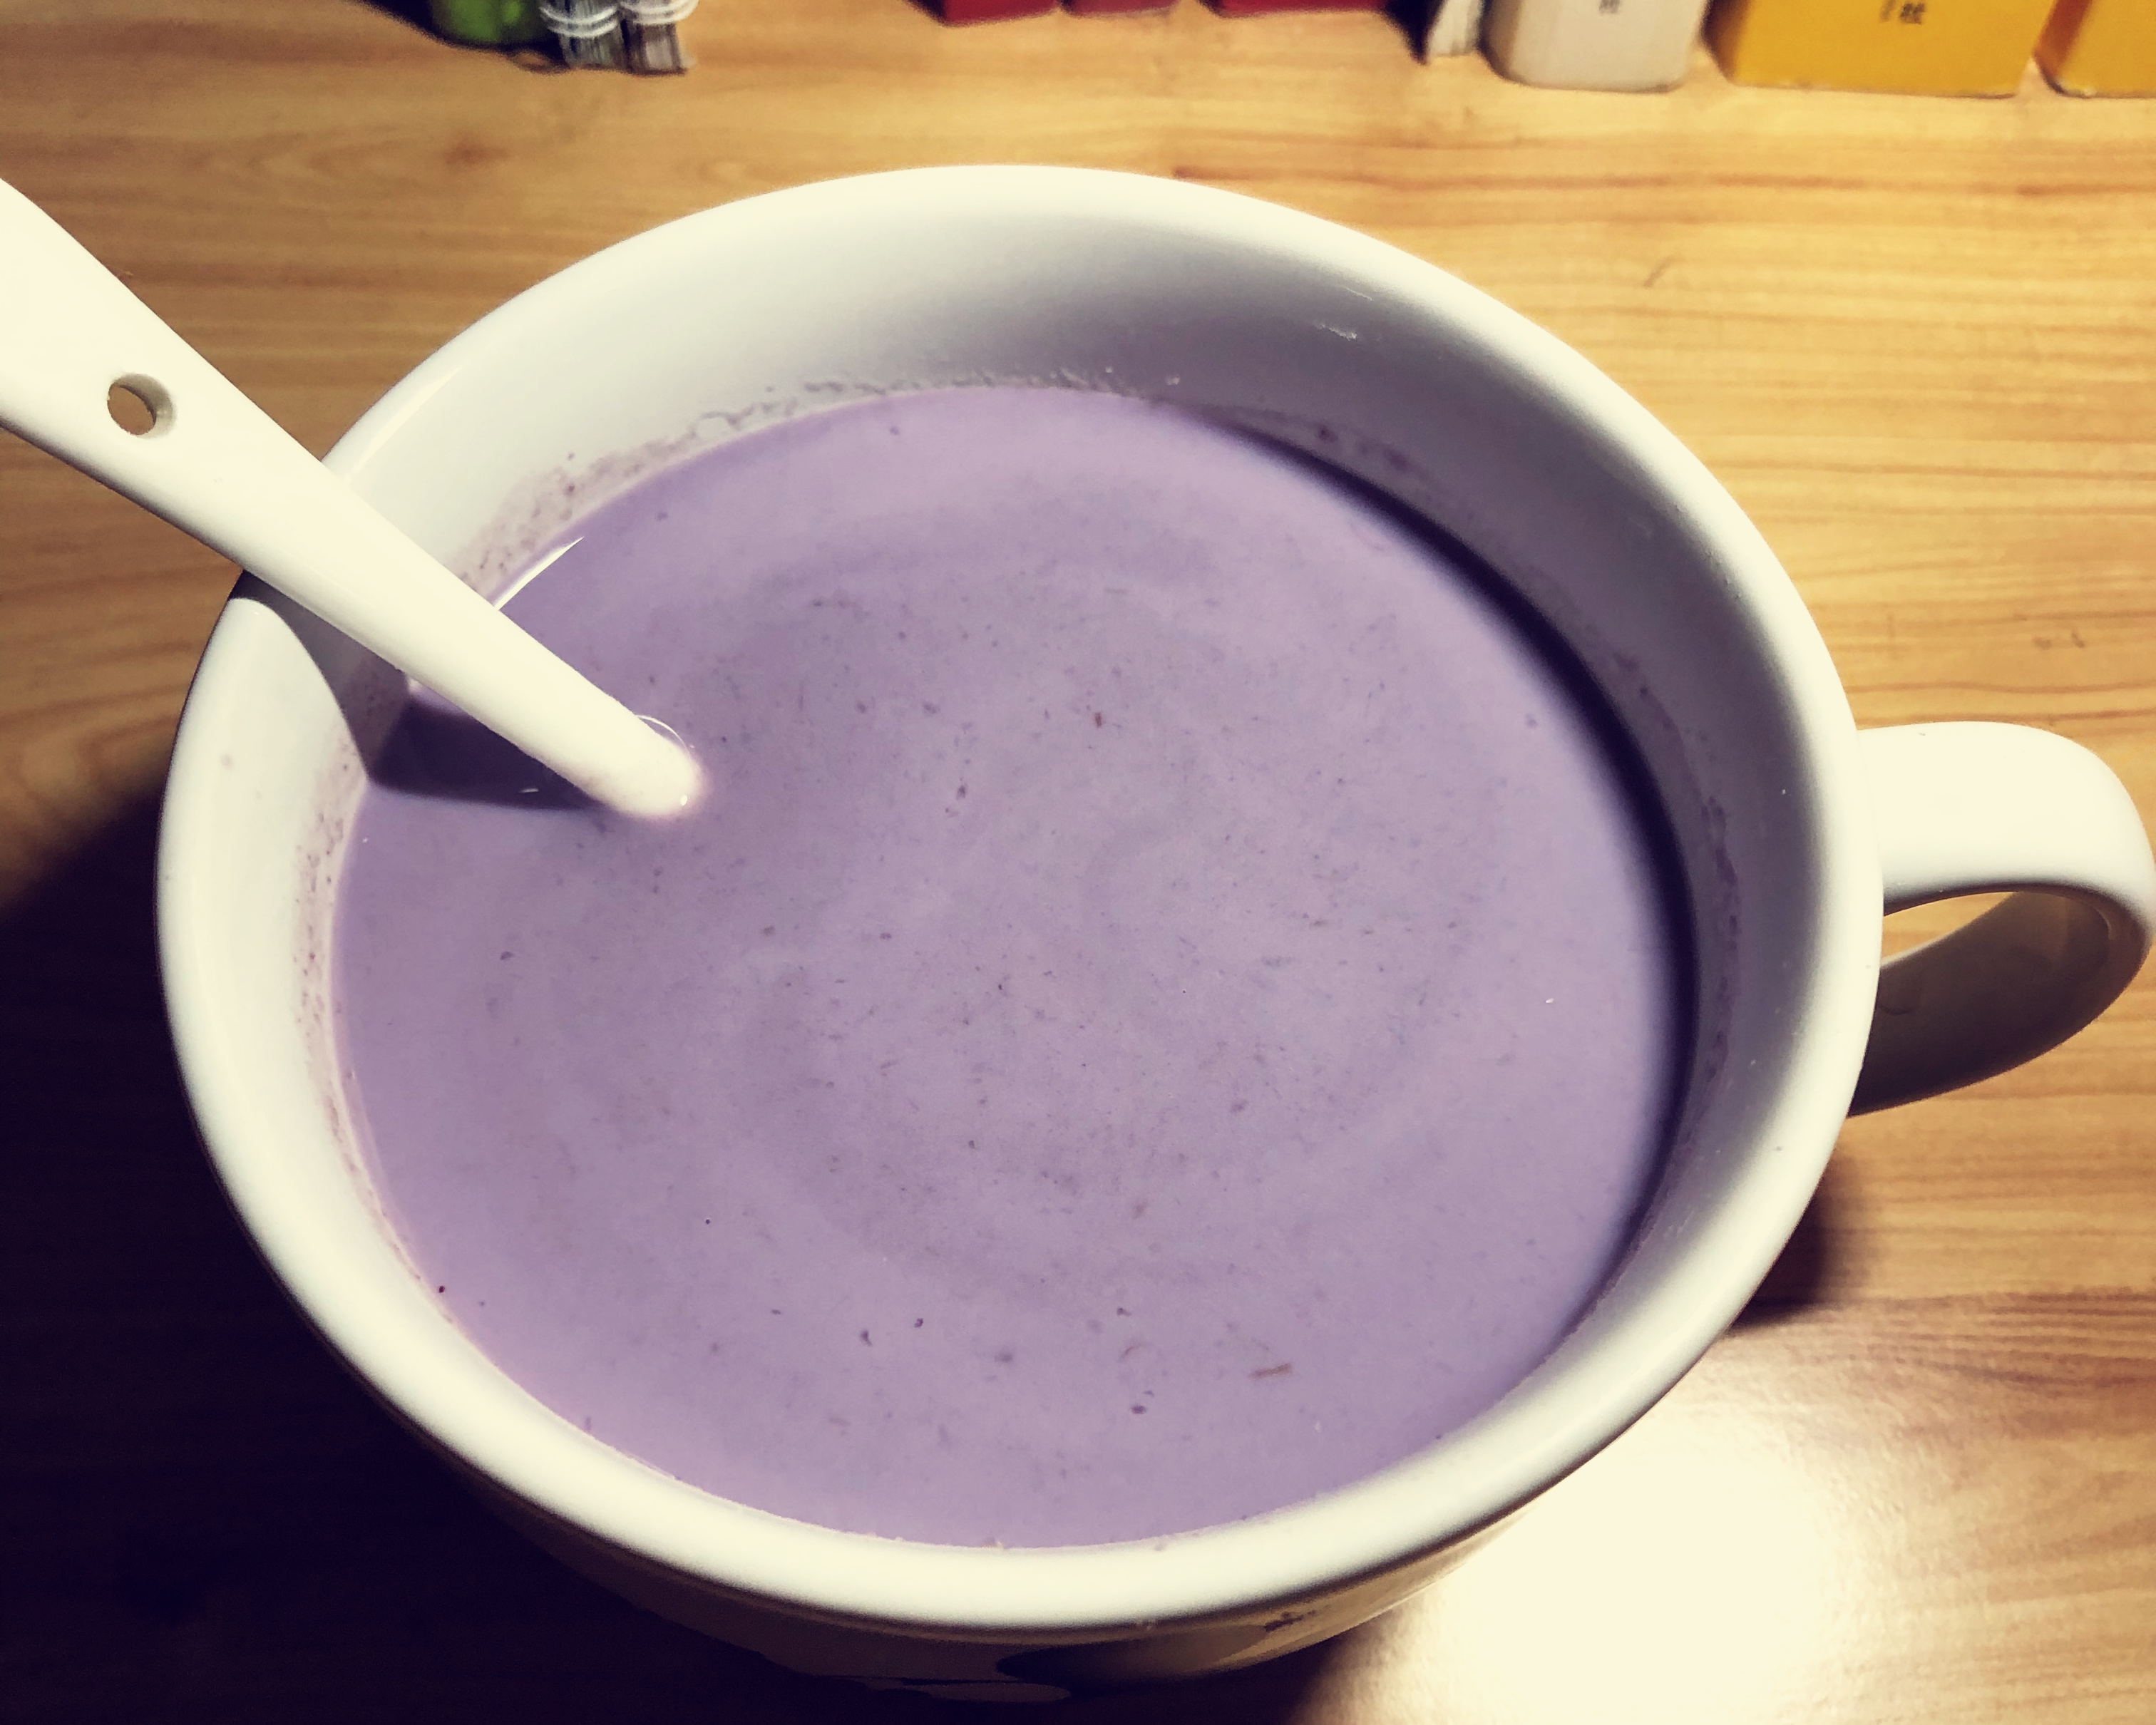 紫薯泥➕牛奶=香芋奶昔